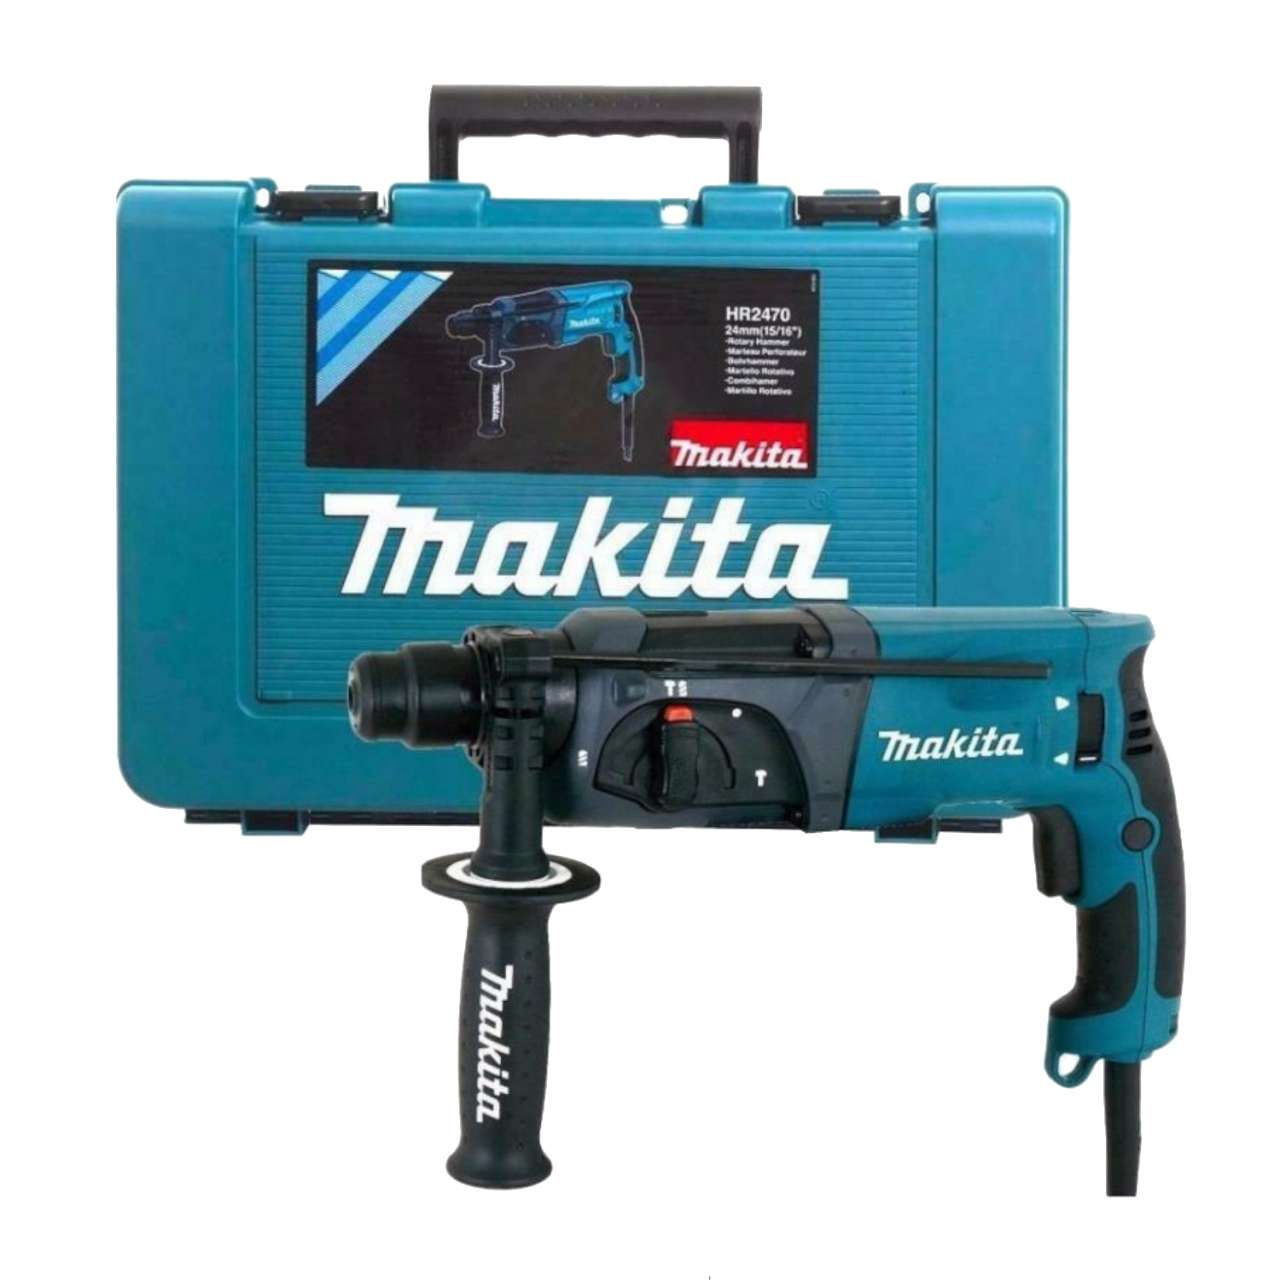 Makita Kombihammer HR2470 Bohrhammer im Koffer zum Bohren Hammerbohren Meißeln